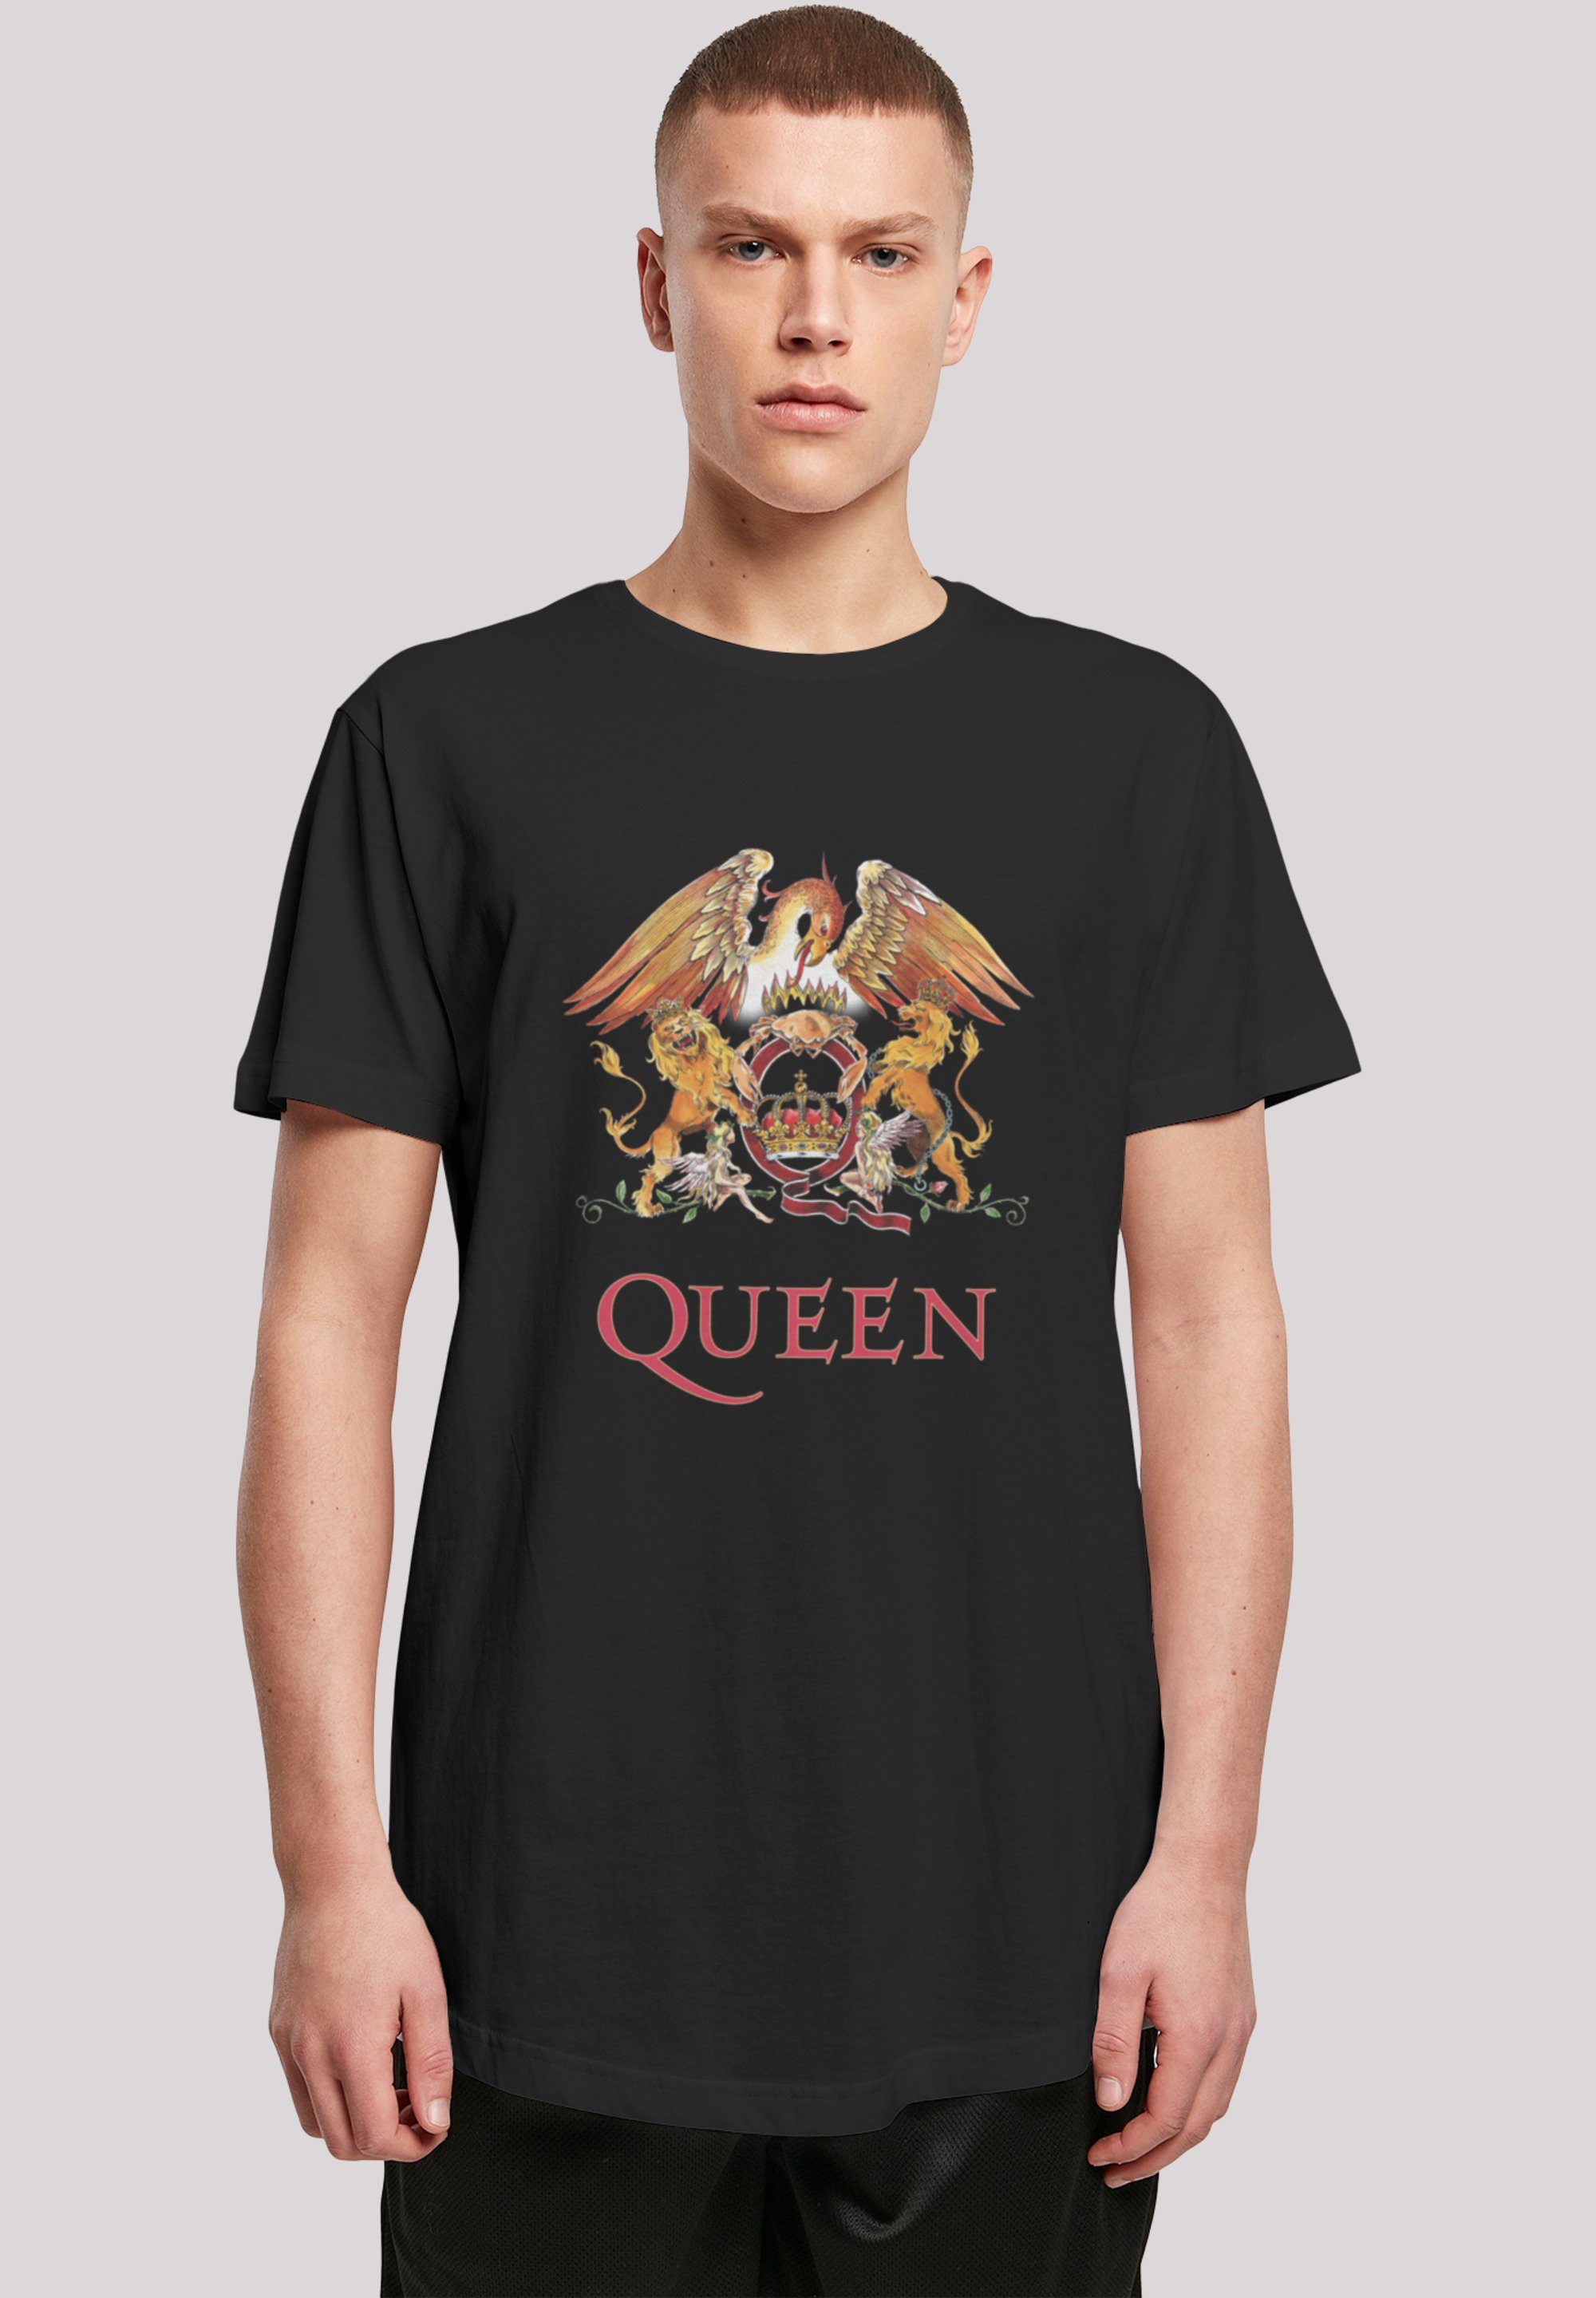 F4NT4STIC T-Shirt Queen Crest Größe trägt Black und Das ist Print, Rockband Classic groß cm Model 180 M